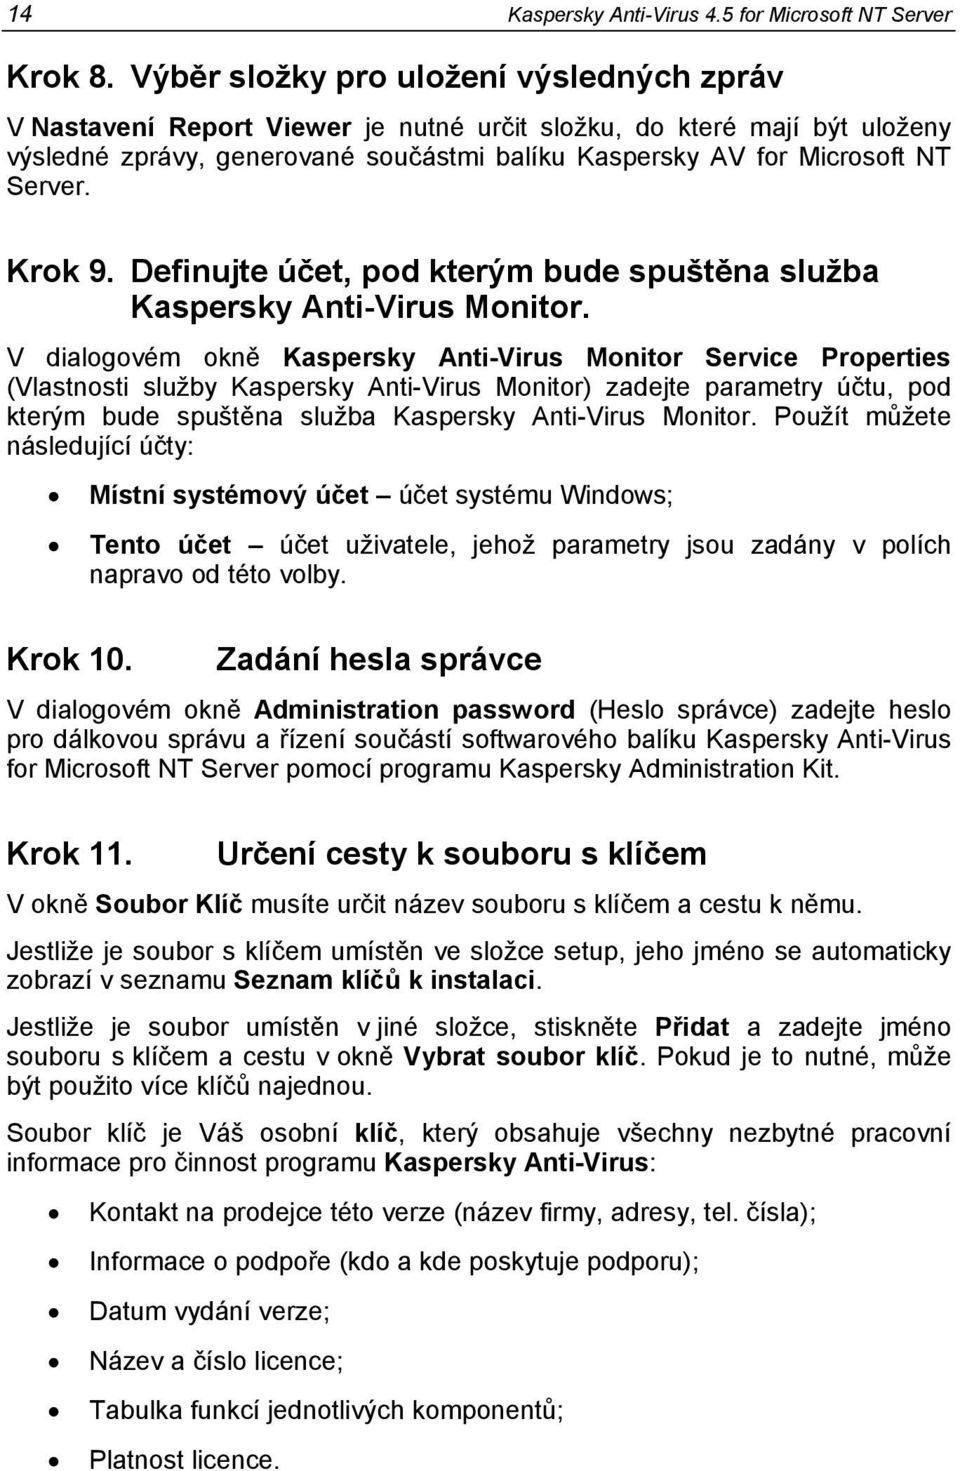 Krok 9. Definujte účet, pod kterým bude spuštěna služba Kaspersky Anti-Virus Monitor.